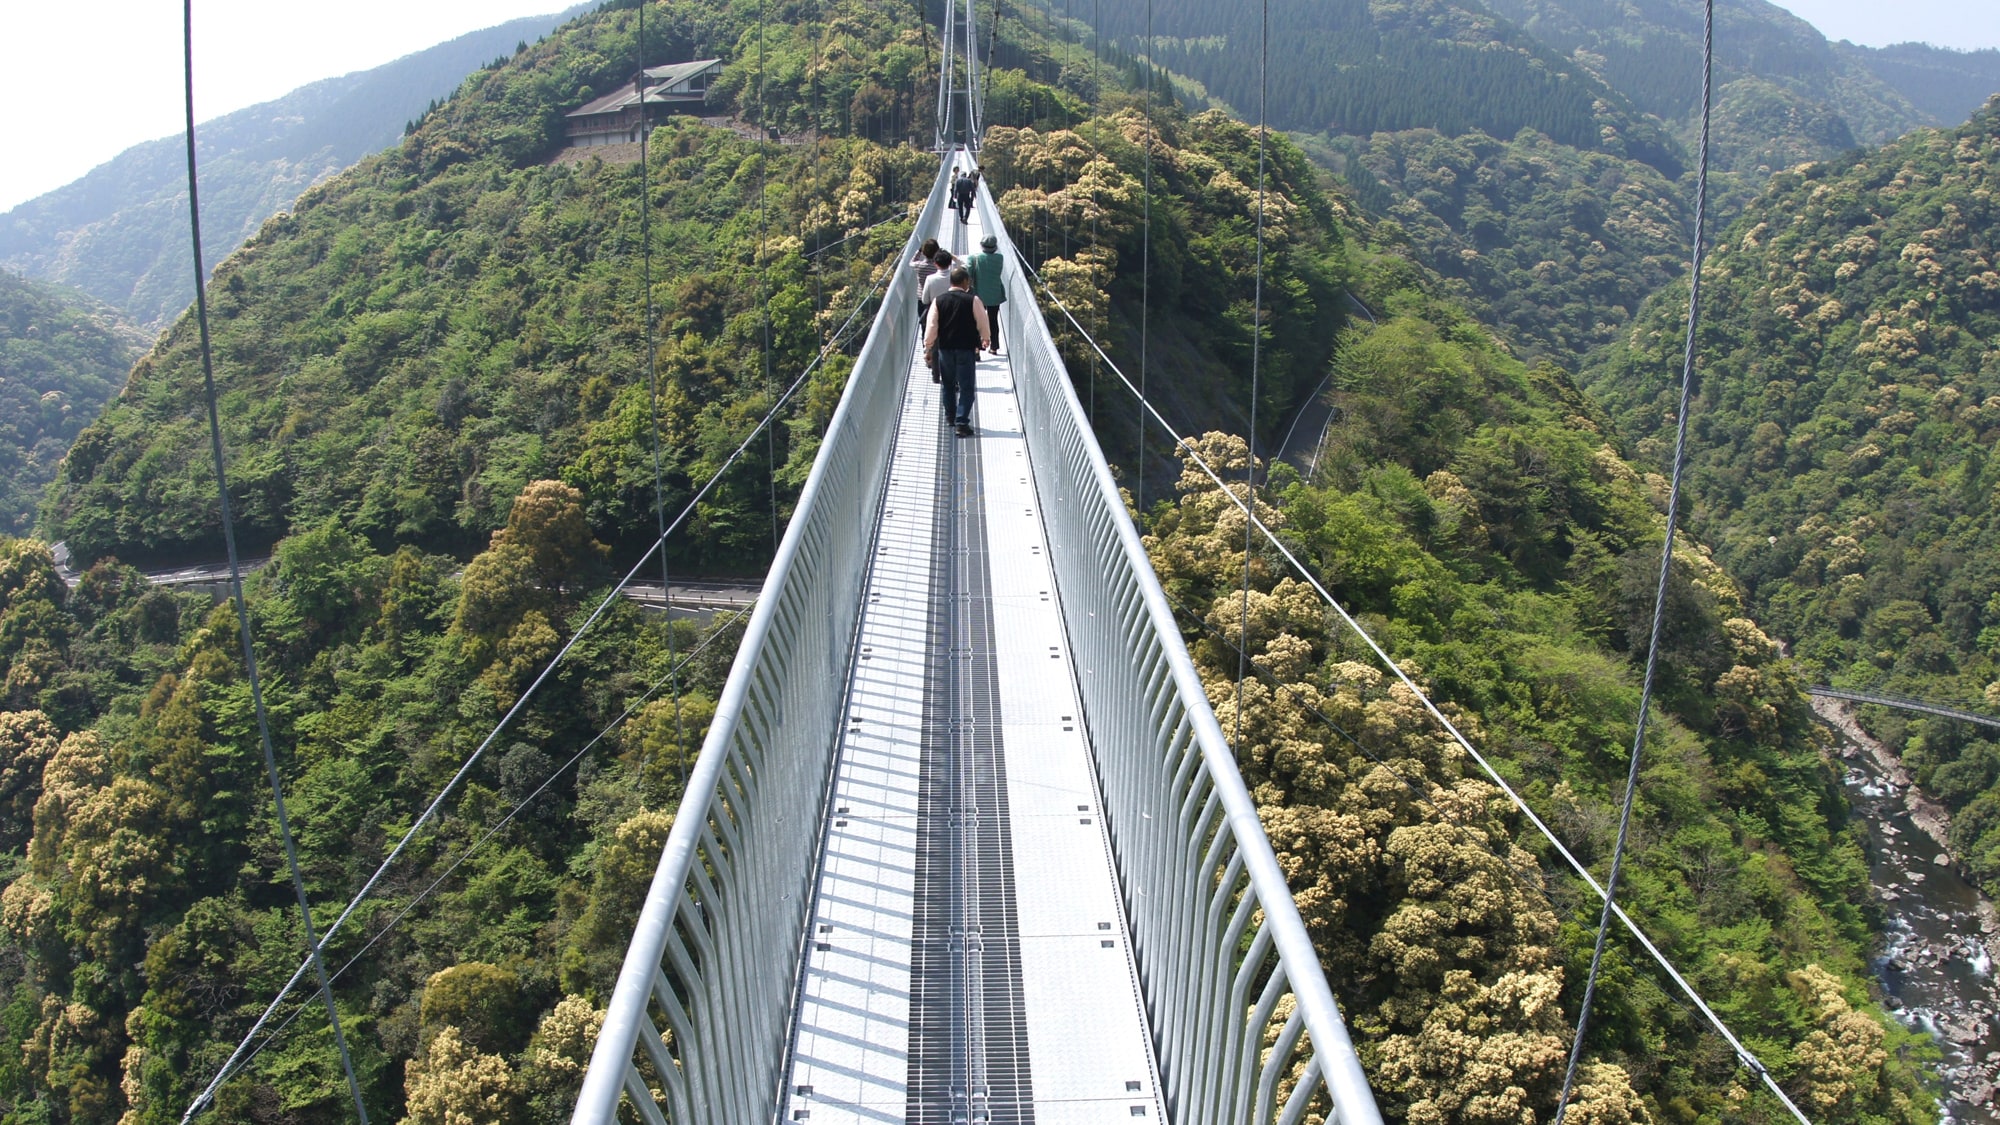 [สะพานแขวนขนาดใหญ่เทรุฮะ] นี่คือสะพานแขวนขนาดใหญ่ที่มีความสูงของ & ldquo; & rdquo; ที่ใหญ่ที่สุดในญี่ปุ่นที่สร้างขึ้นเพื่อปกป้องป่าลอเรล